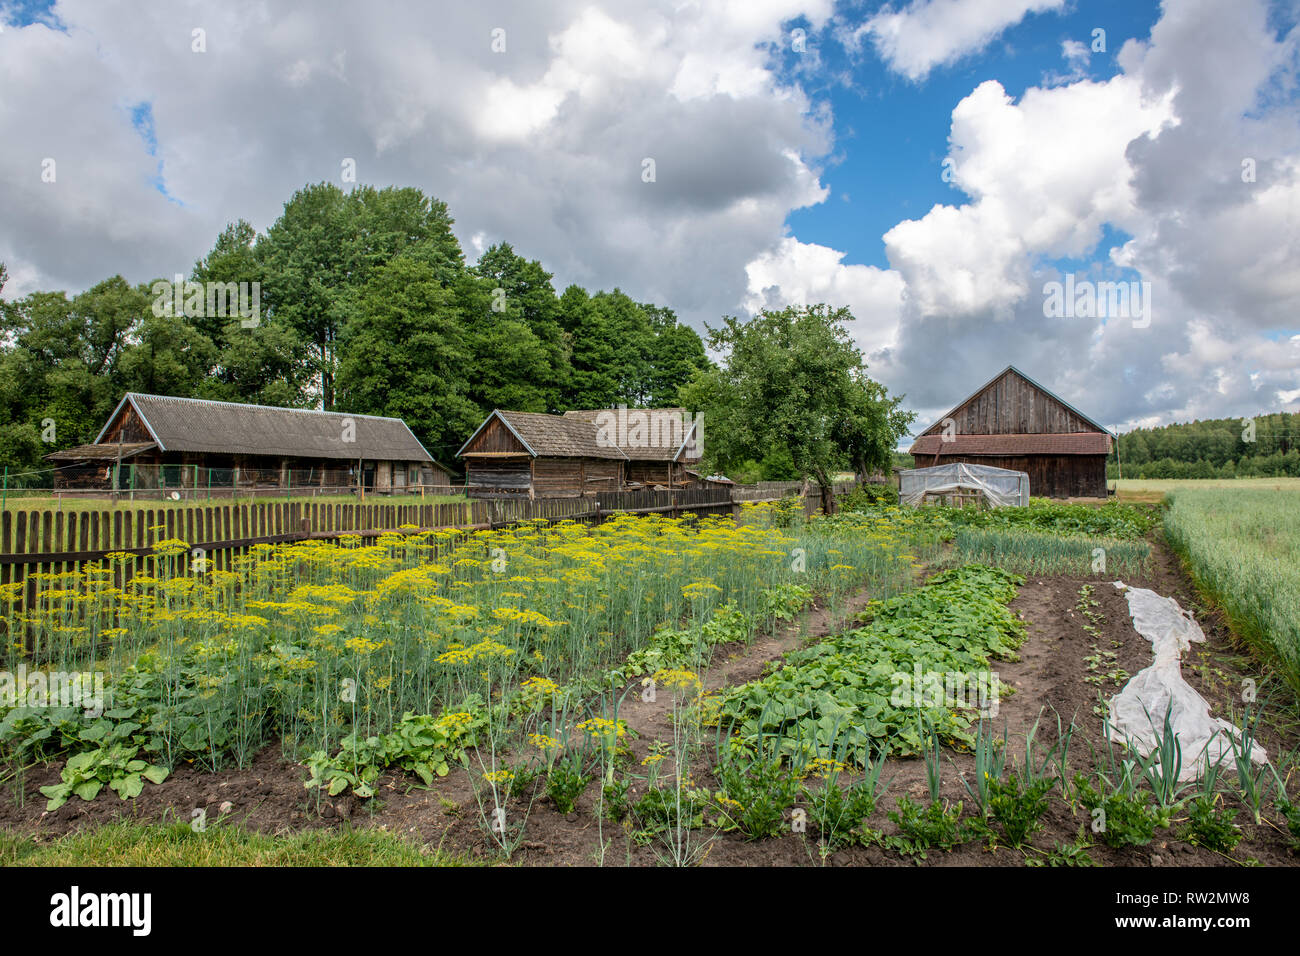 Ackerland mit hölzernen Scheune bei bewölktem Himmel, Puchly Polen - Stockfoto